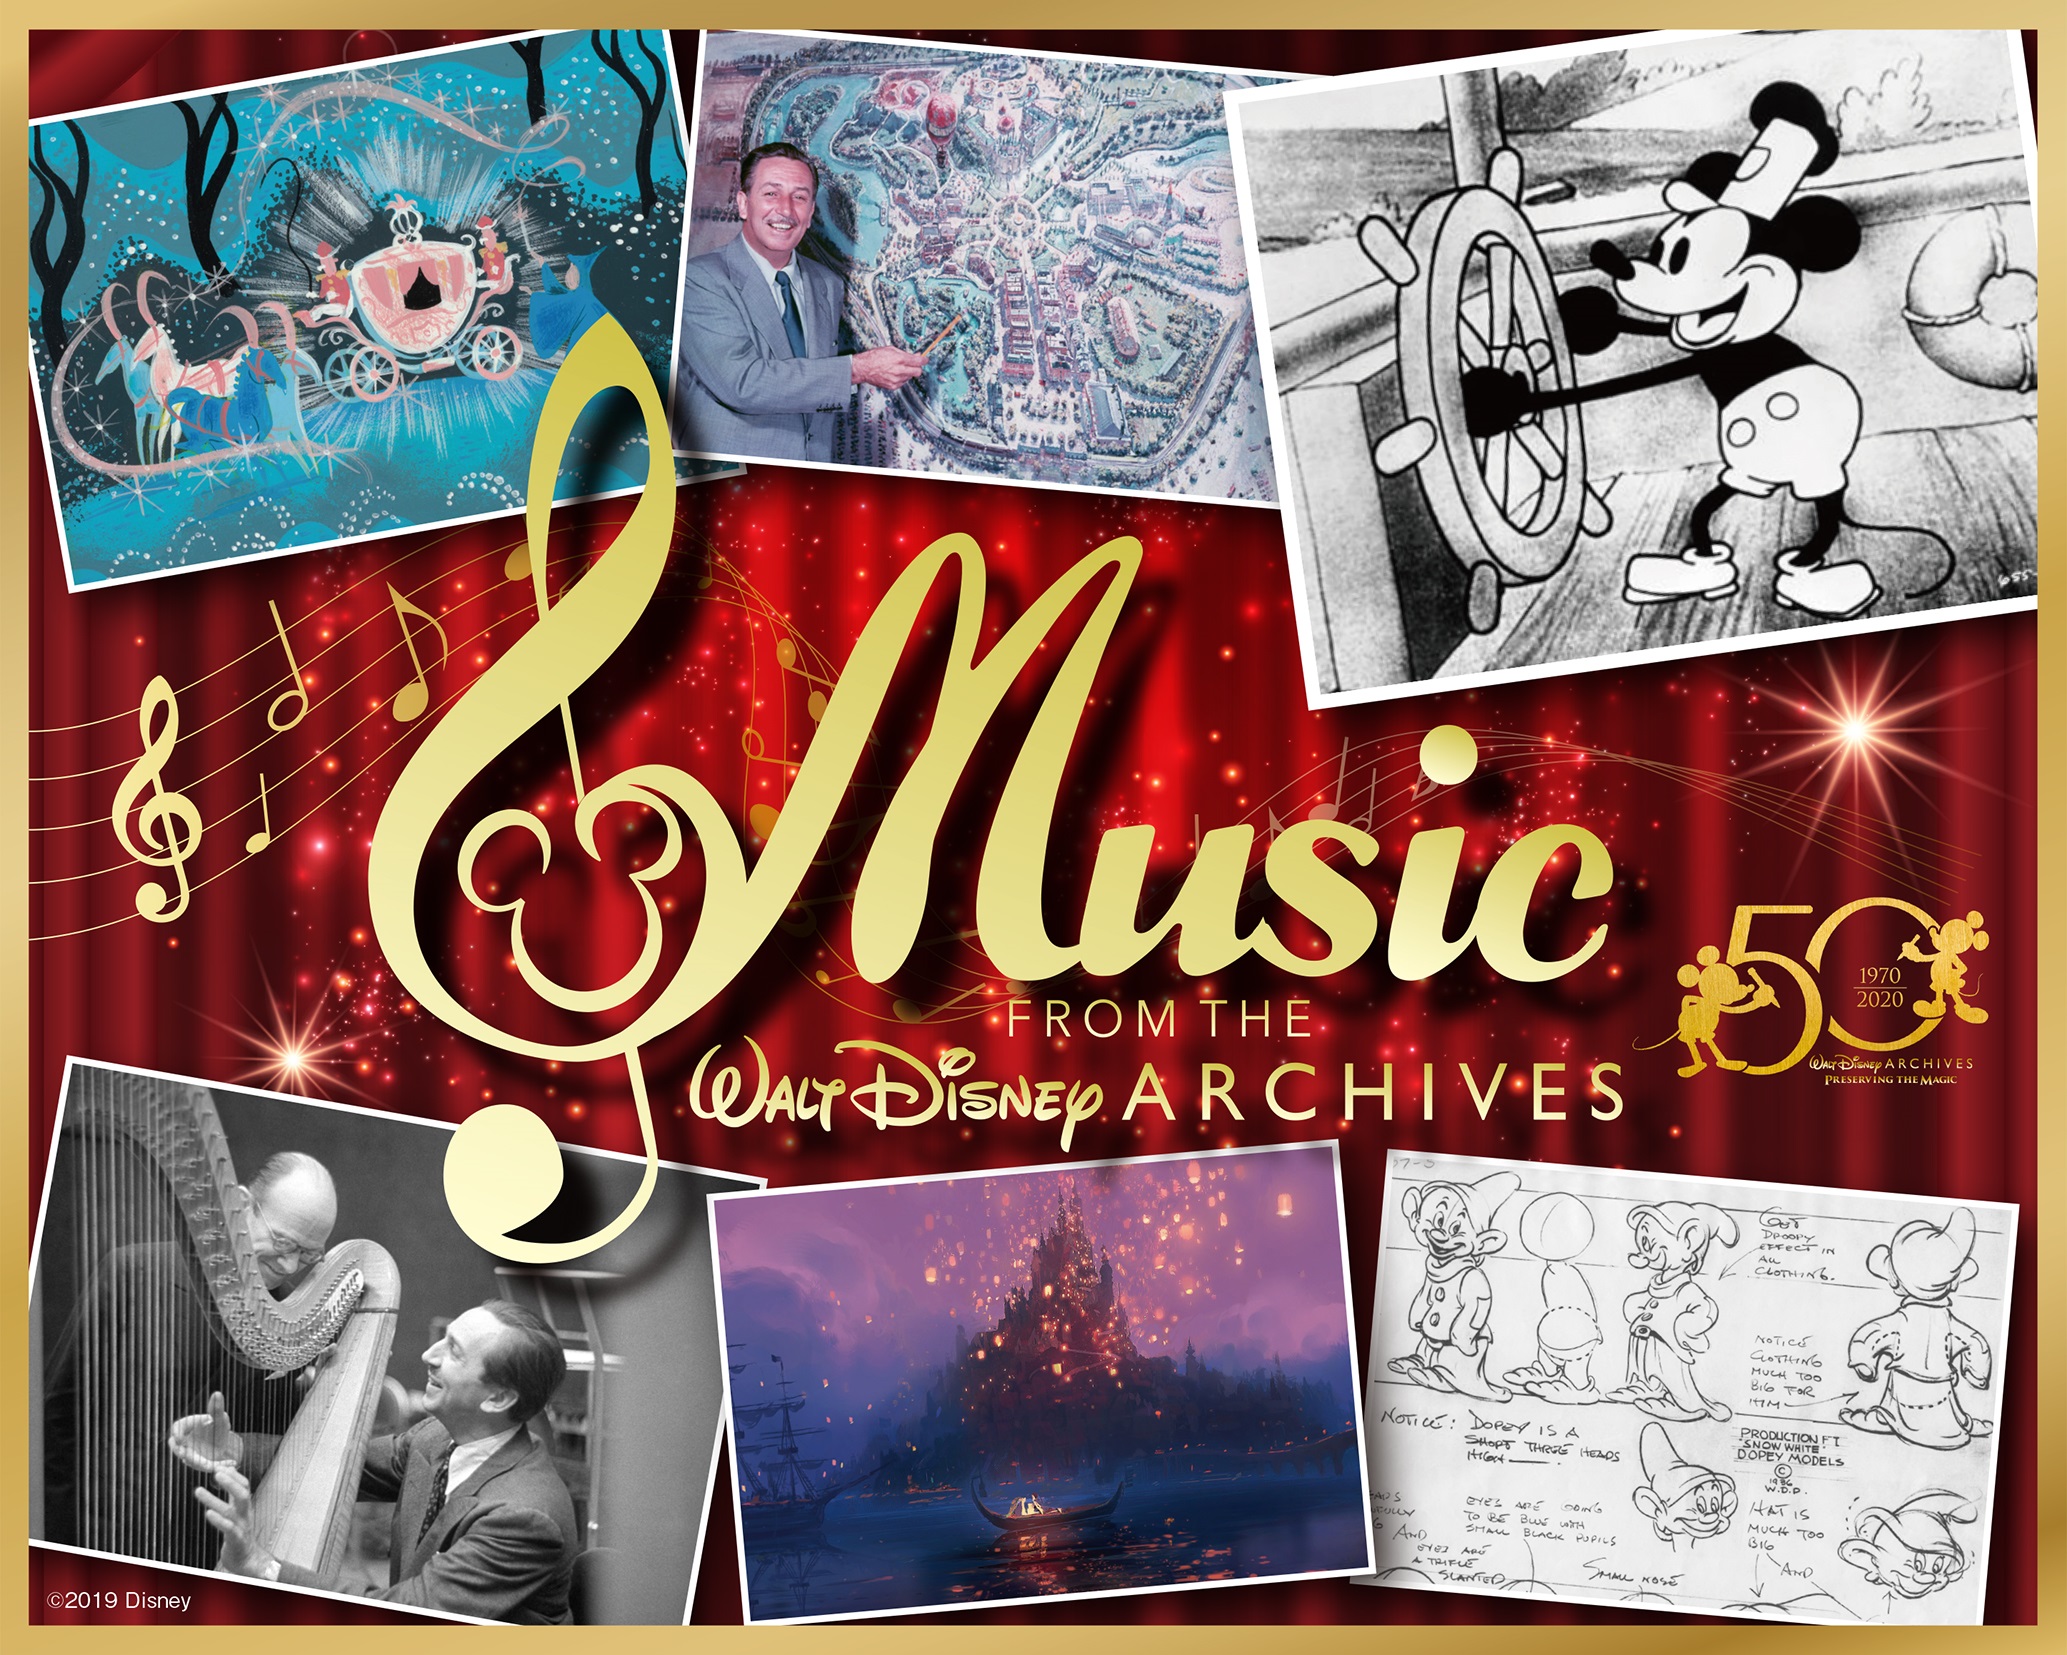 ウォルト ディズニー アーカイブス設立50周年記念 ウォルト ディズニー アーカイブス コンサート 演奏楽曲を一部発表 おたにゅー